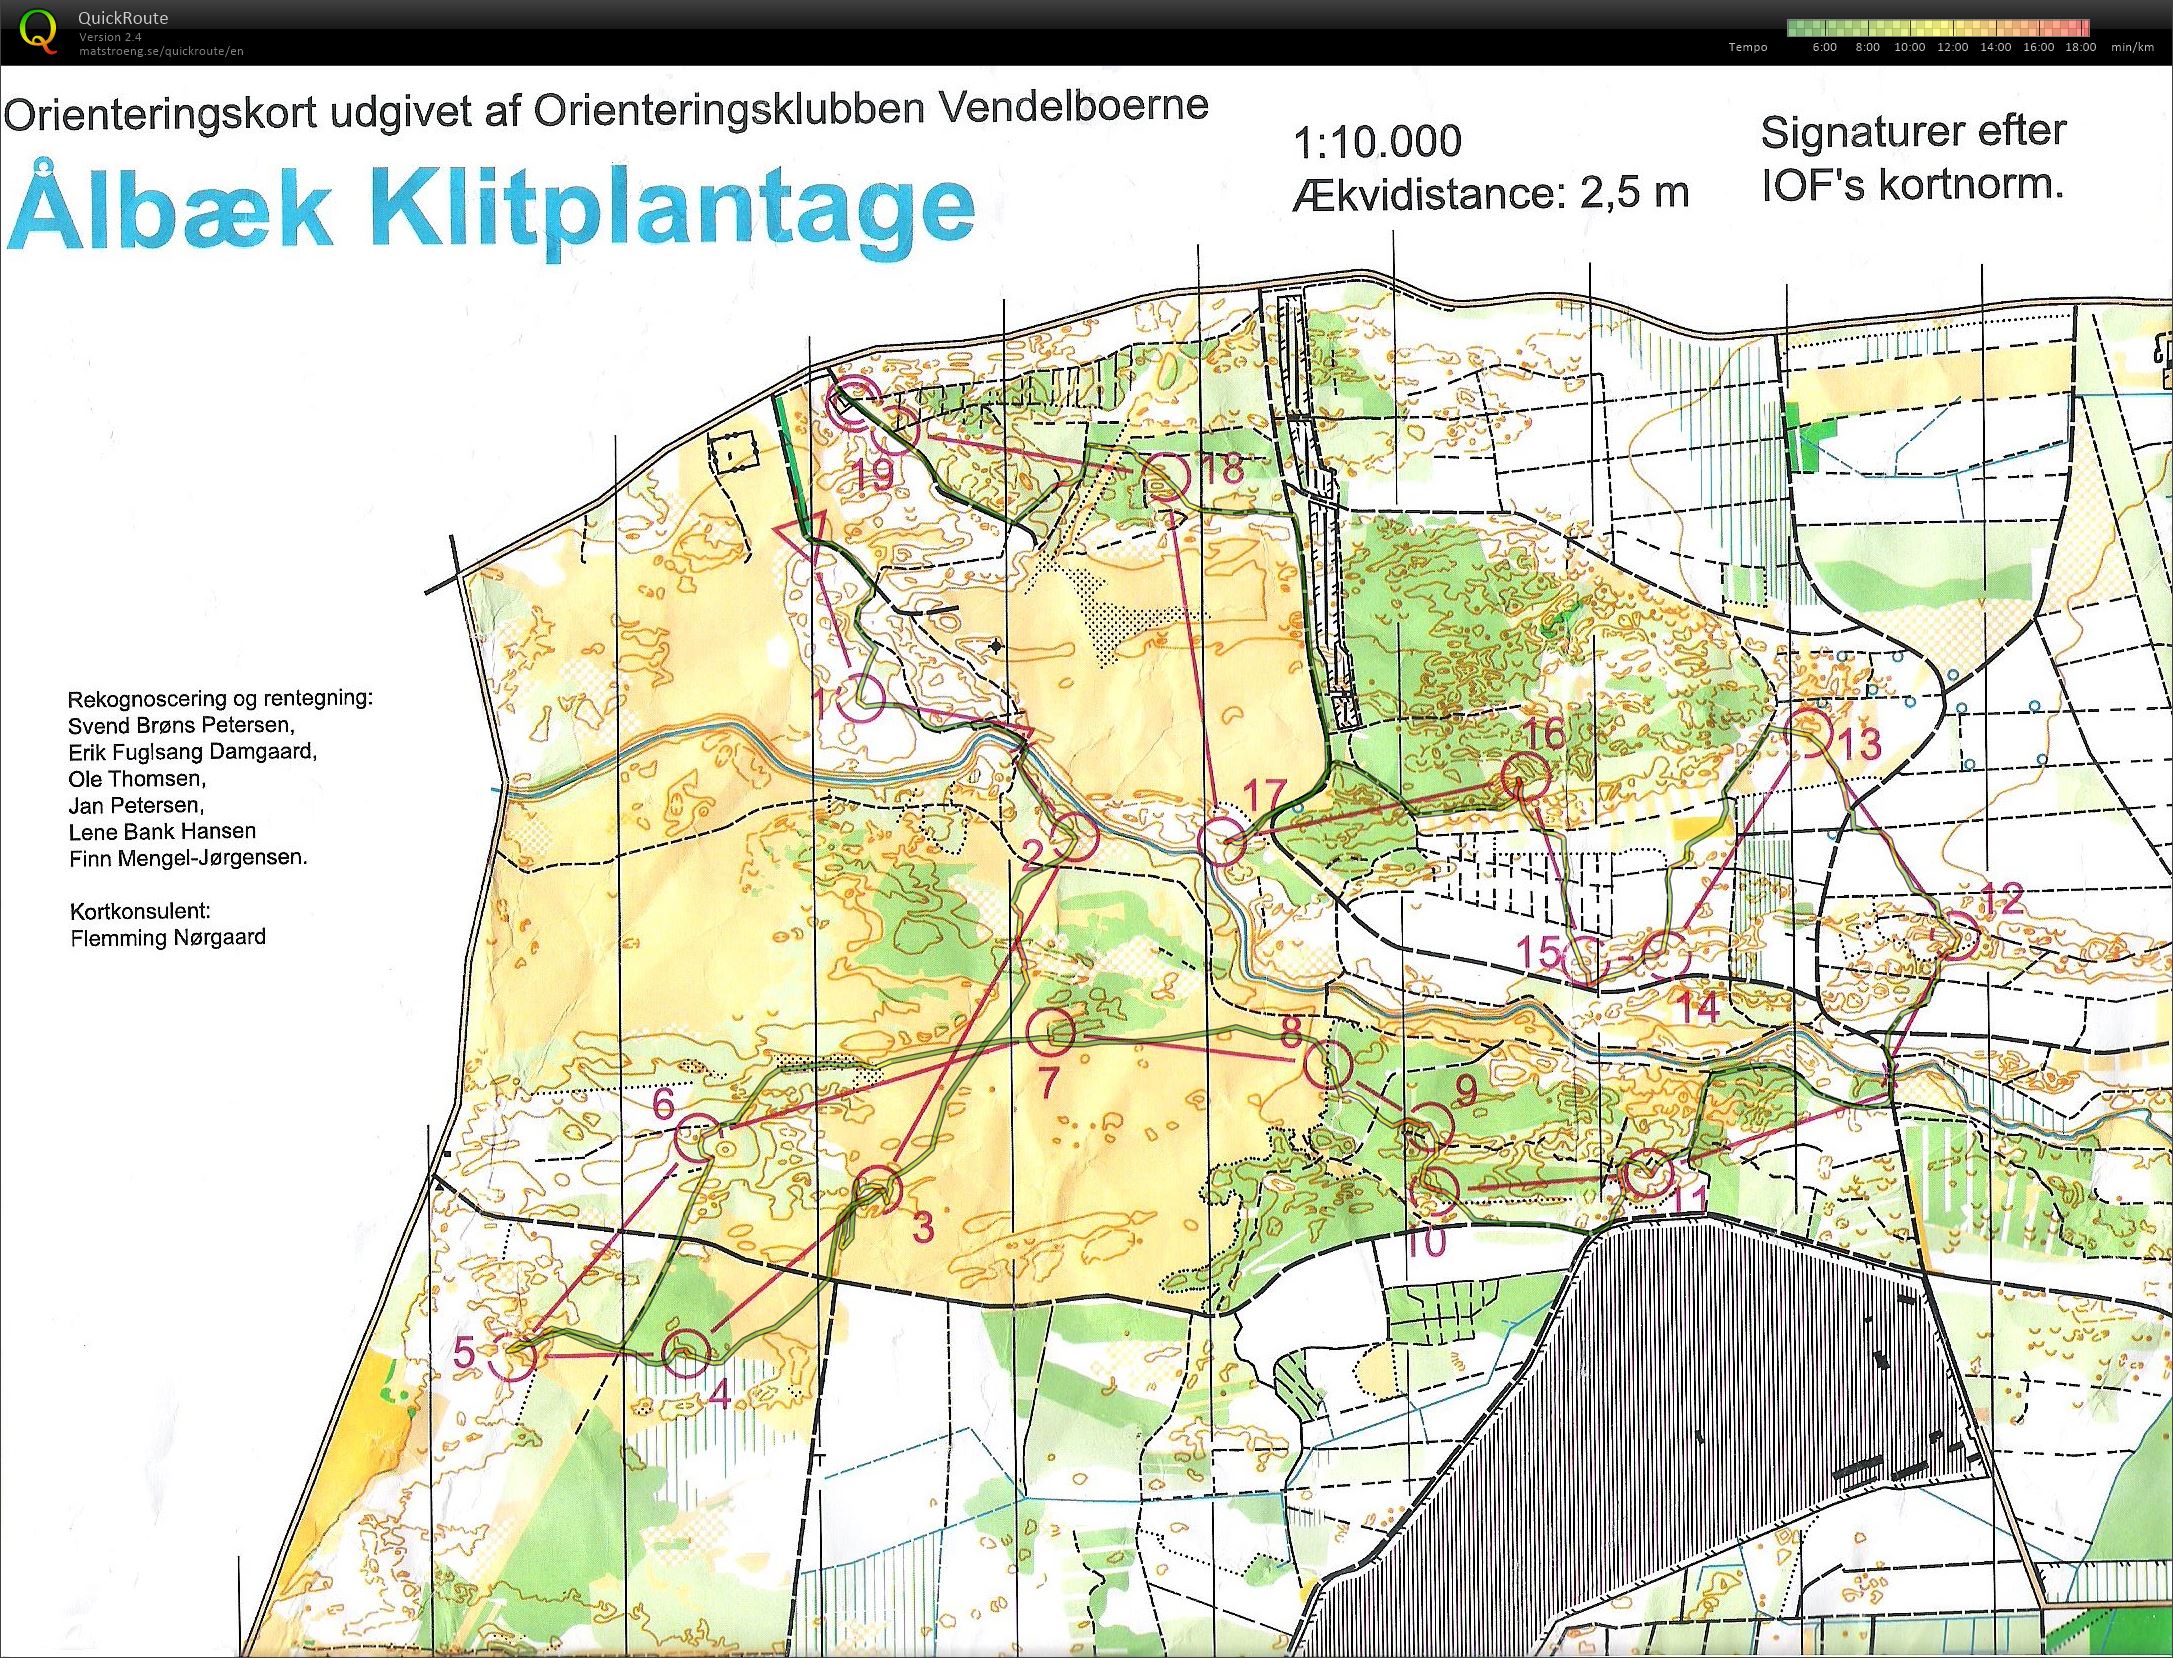 NJM Natløb Ålbæk Klitplantage - H45 - 6.2 km. (24-09-2014)